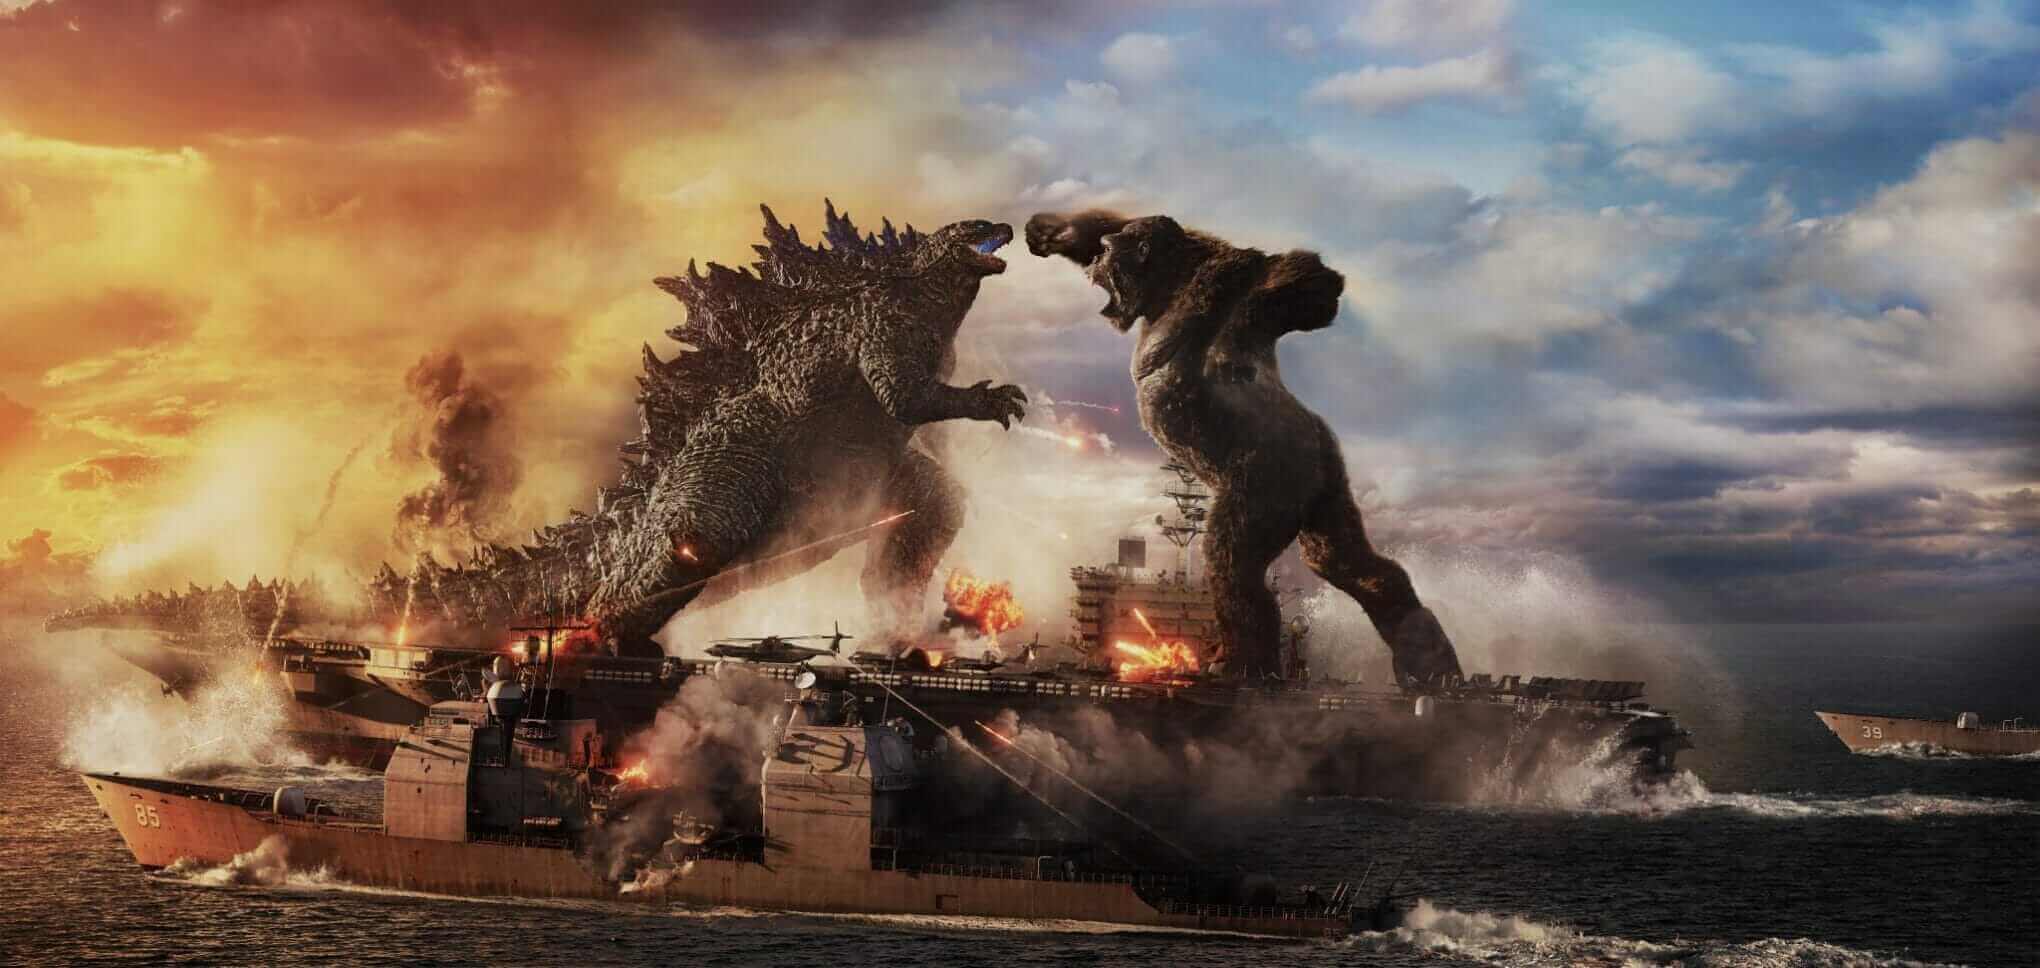 Godzilla vs Kong 2021